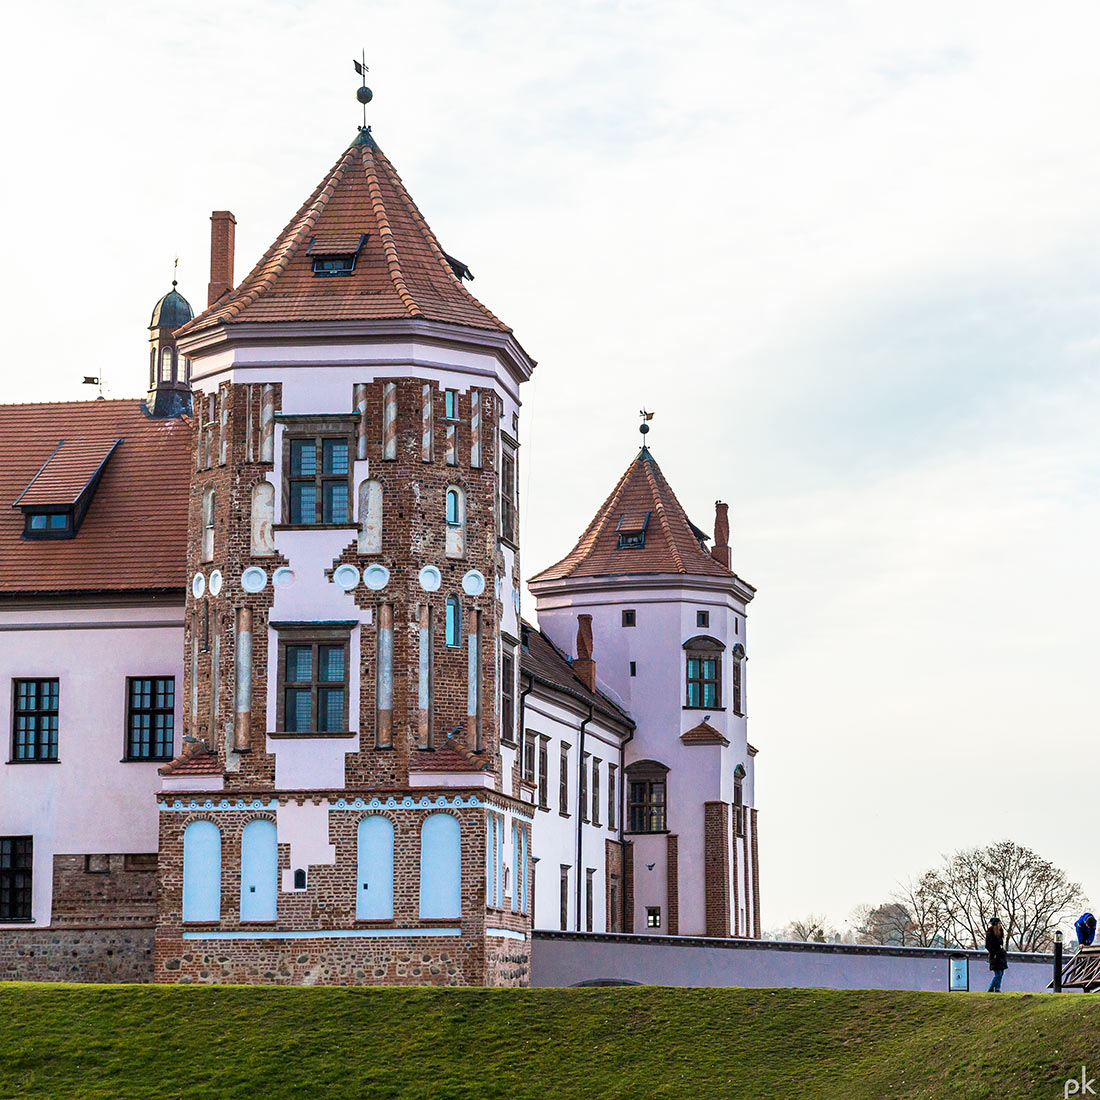 Мирский замок: исключительный образец самобытной белорусской готики Средневековья история,мир,отдых,поездка,путешествия,тур,туризм,экскурсионный тур